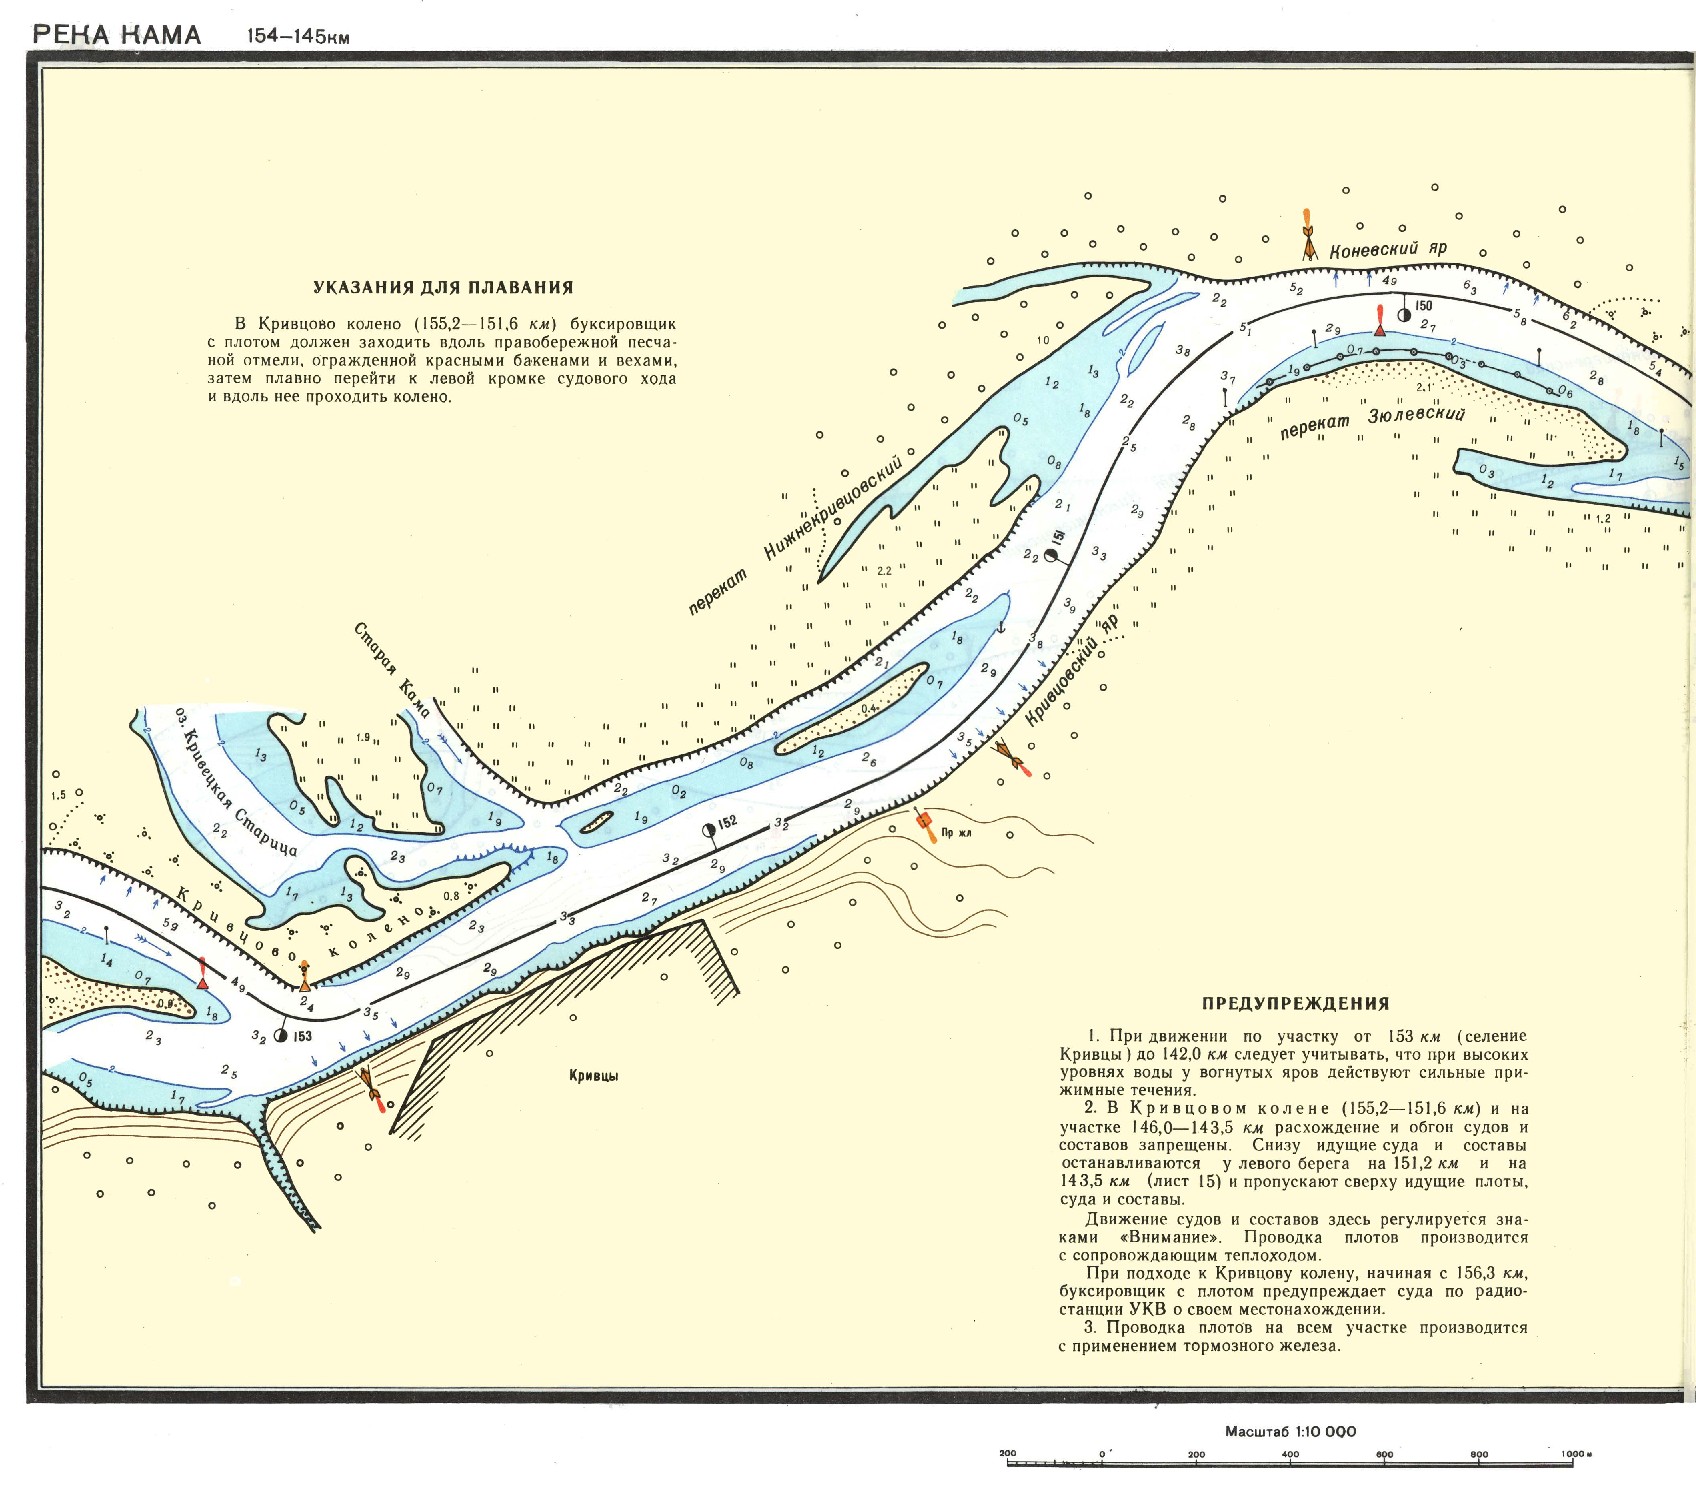 Река Кама на карте масштаб